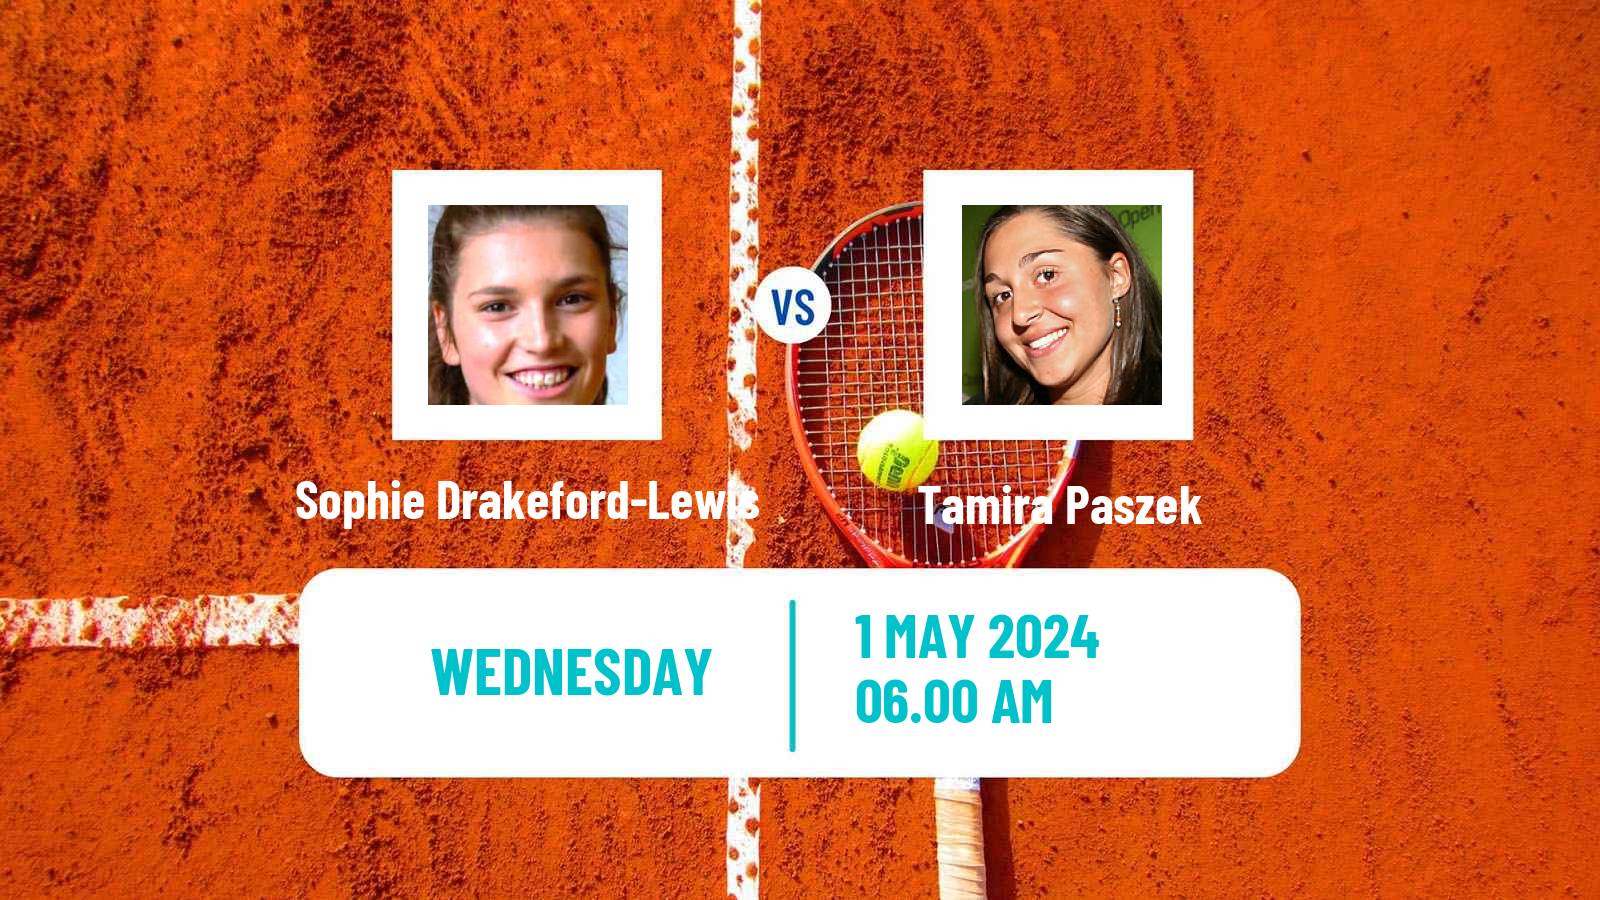 Tennis ITF W35 Nottingham 2 Women Sophie Drakeford-Lewis - Tamira Paszek